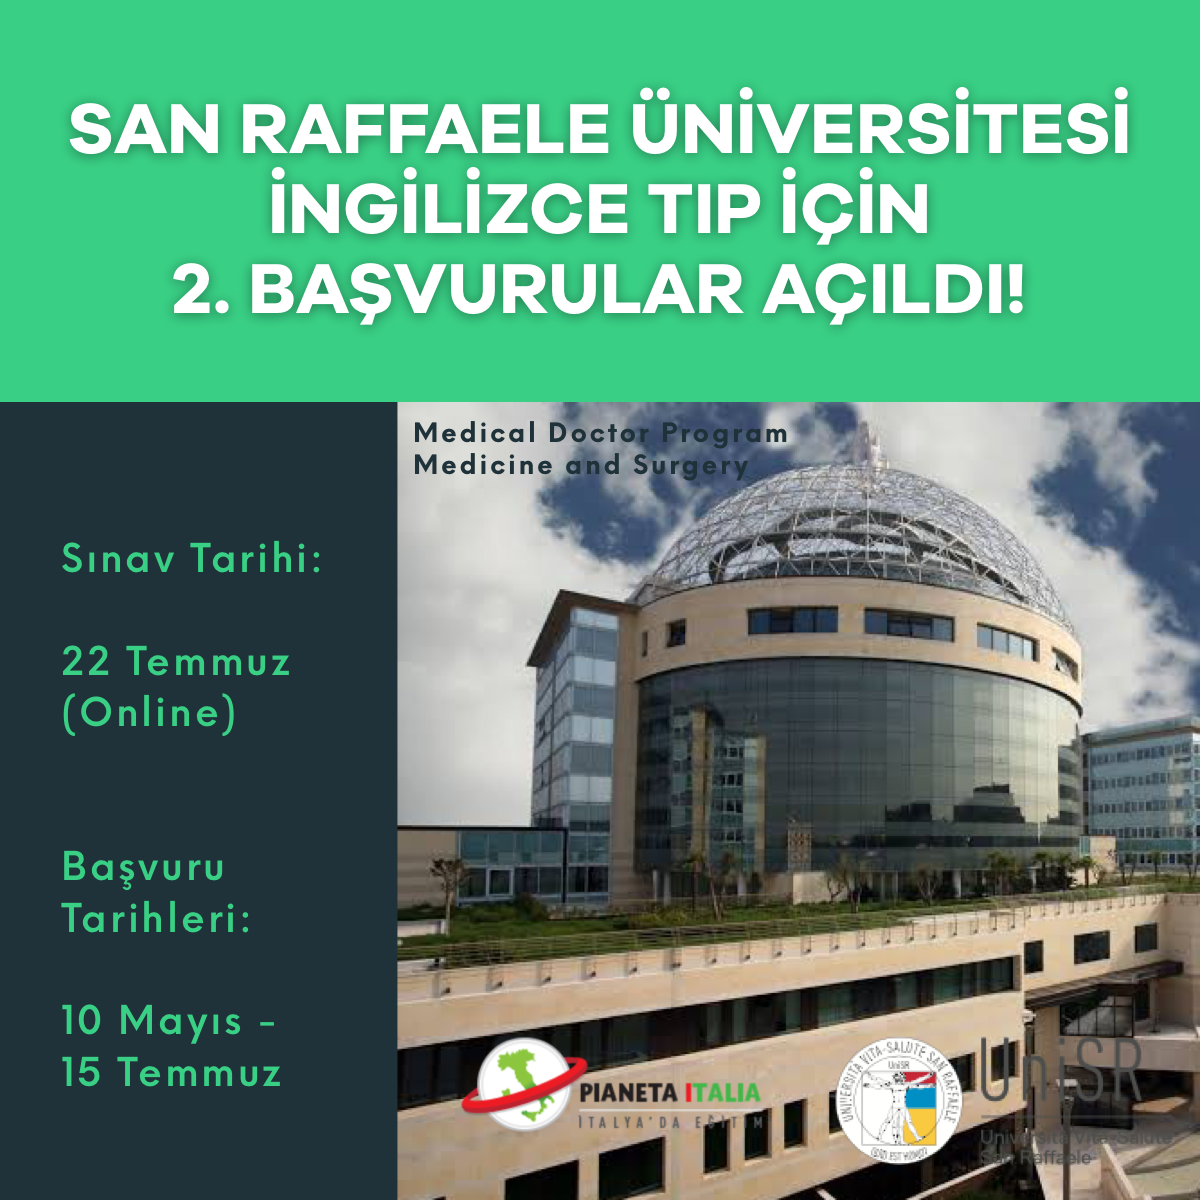 San Raffaele üniversitesi ingilizce Tıp için 2.başvurular açıldı!